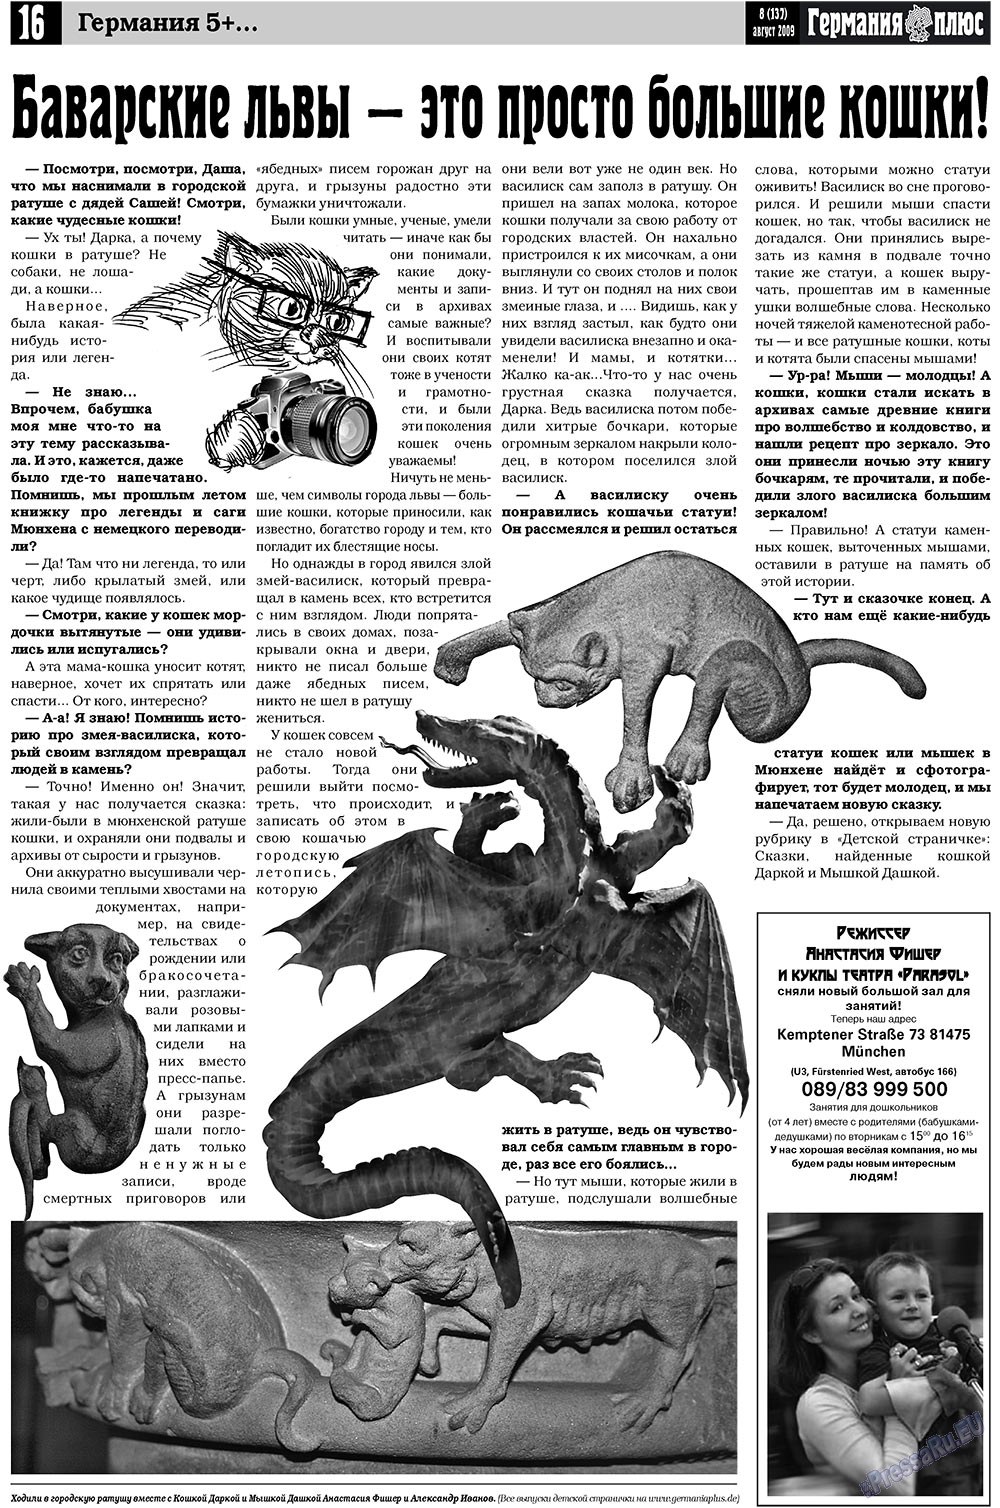 Германия плюс, газета. 2009 №8 стр.20